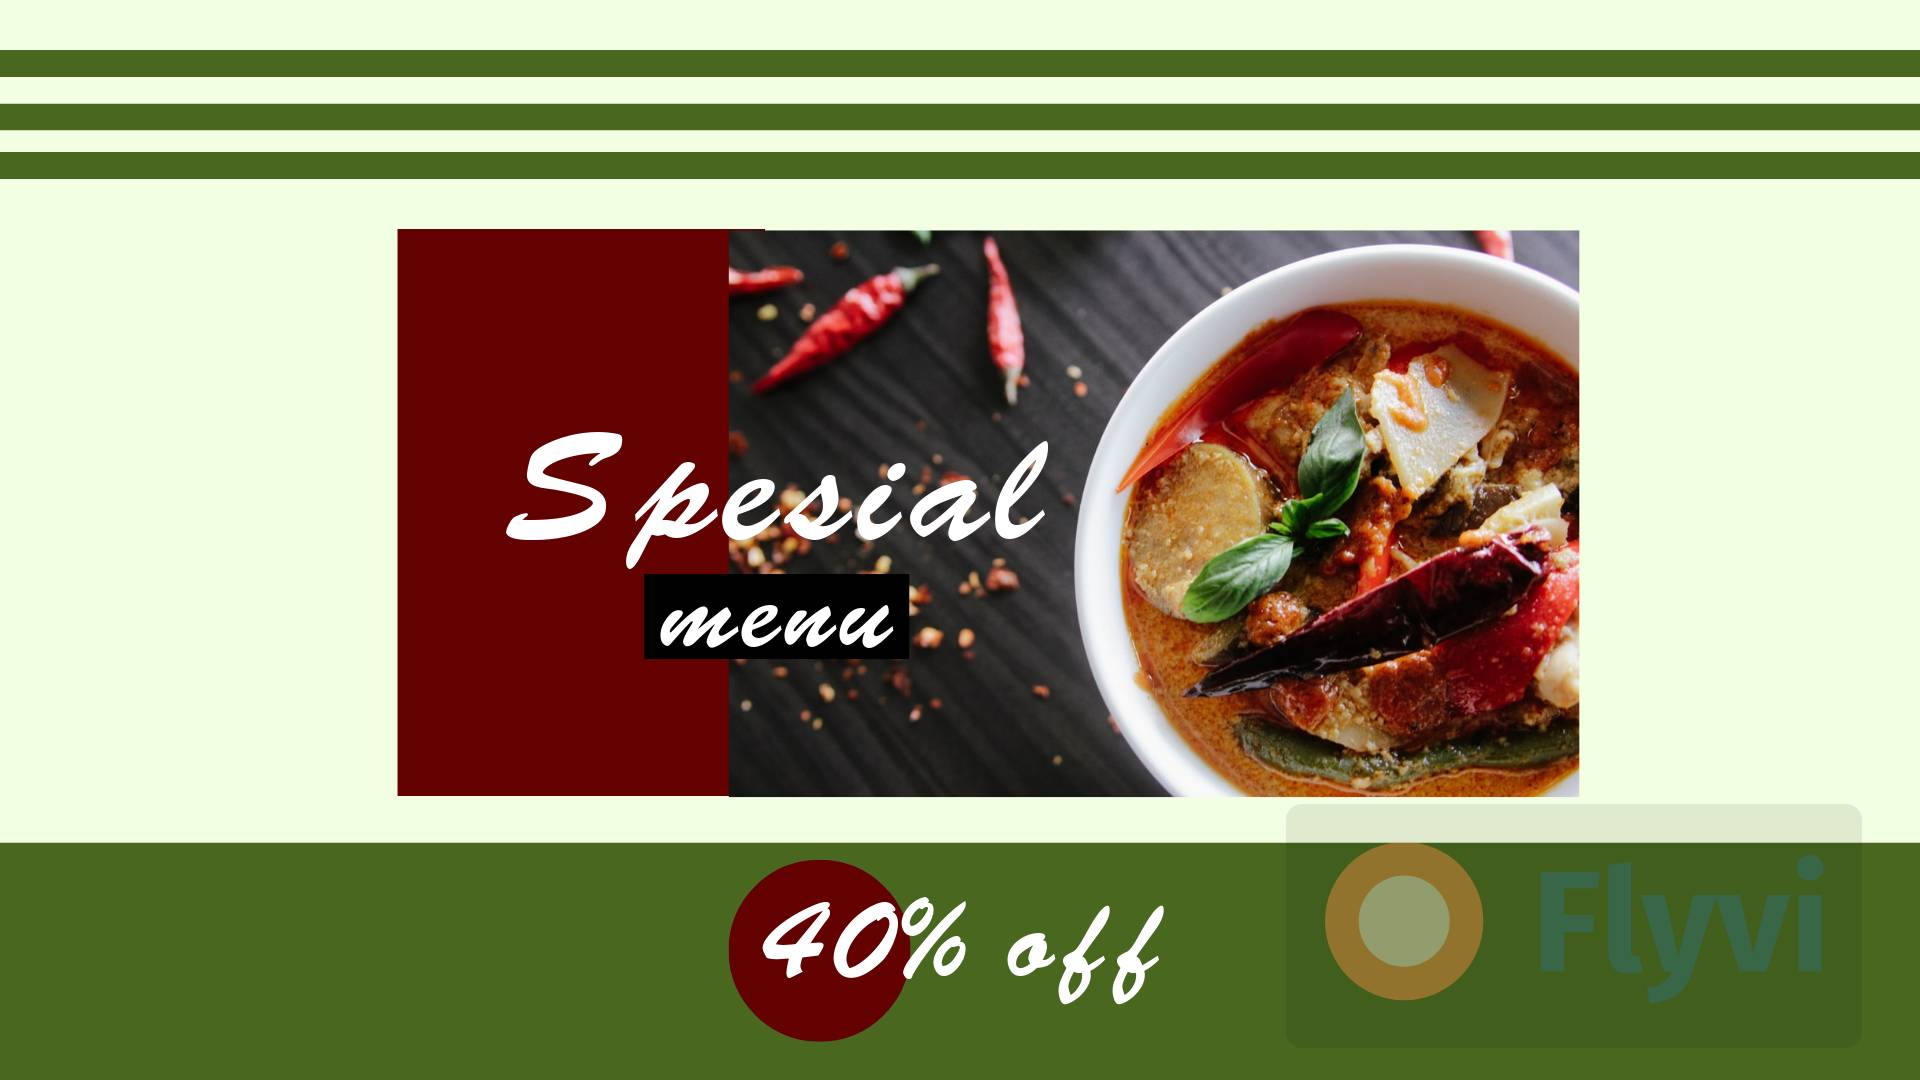 Spesial menu 40% off в темно-зеленых и бордовых цветах с острым супом и перцами чили на белом фоне